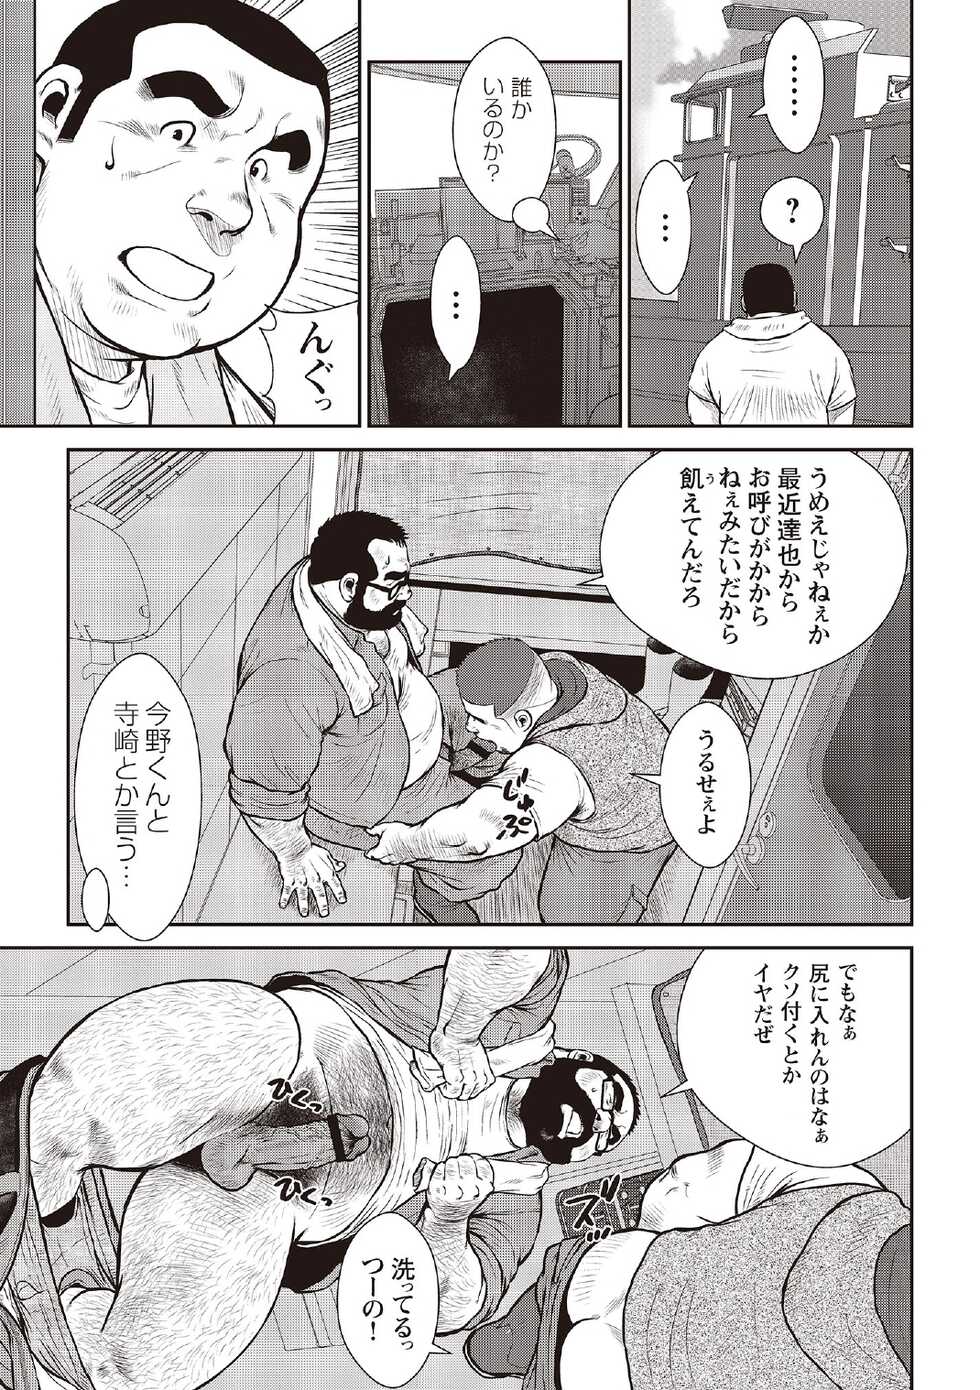 [Ebisubashi Seizou] Ebisubashi Seizou Tanpen Manga Shuu 2 Fuuun! Danshi Ryou [Bunsatsuban] PART 3 Bousou Hantou Taifuu Zensen Ch. 3 ~ Ch. 5 [Digital] - Page 5